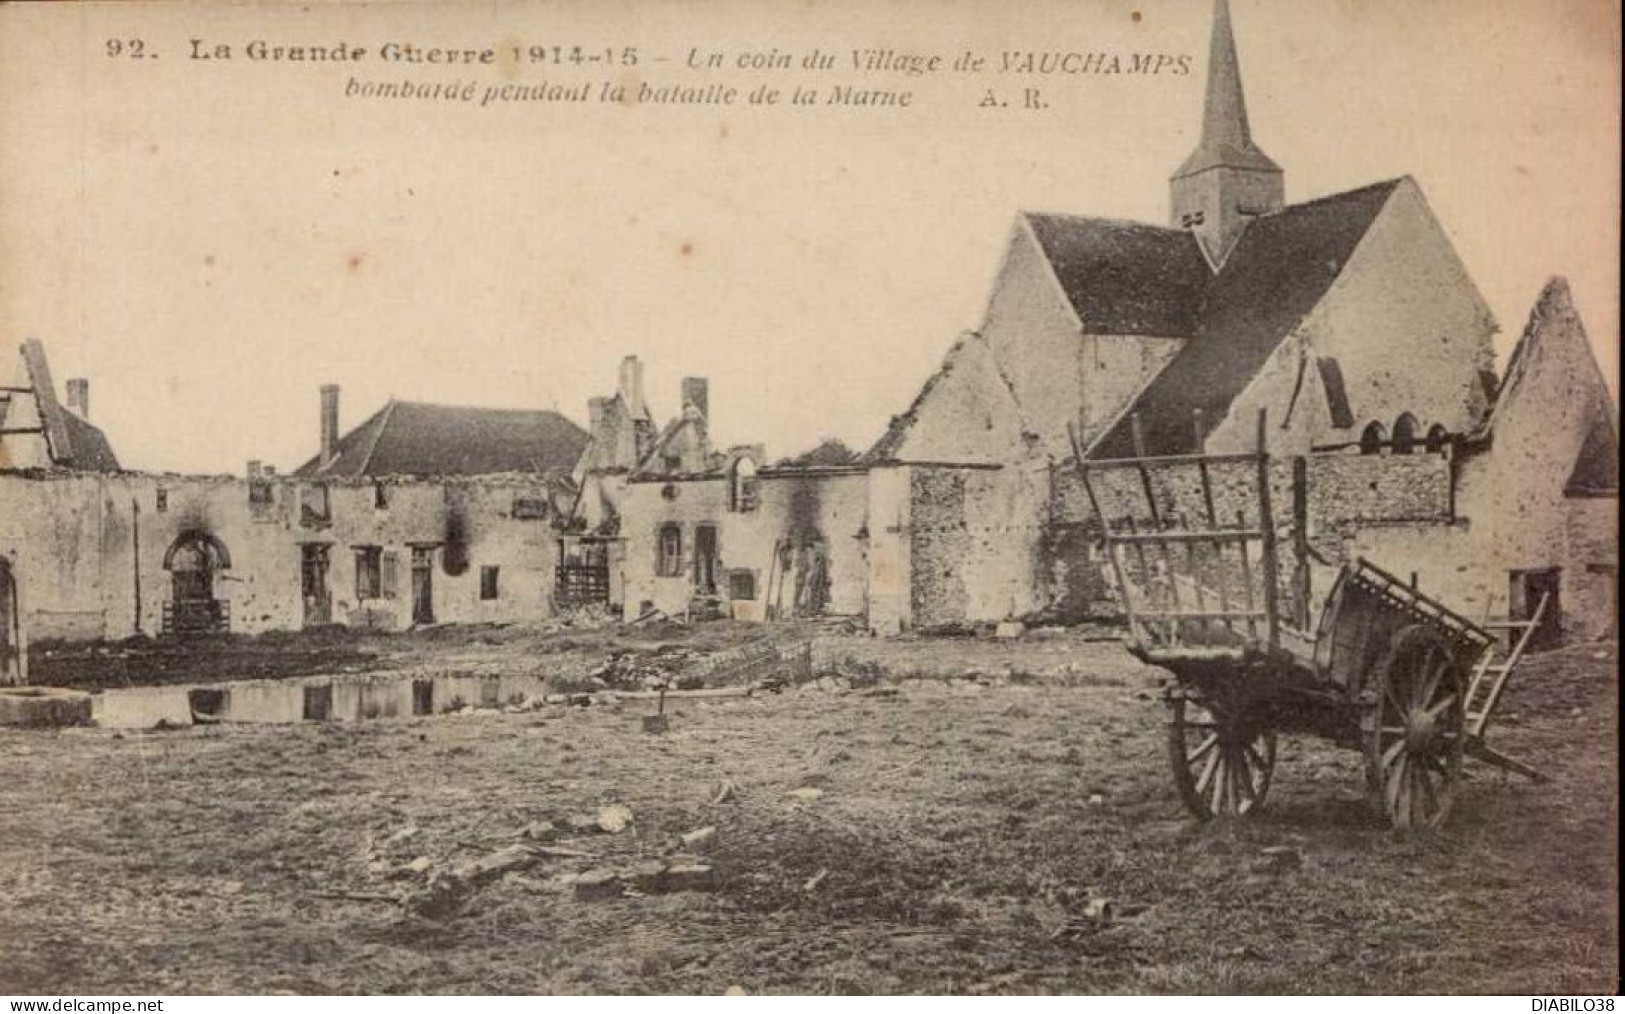 UN COIN DU VILLAGE DE VAUCHANPS BOMBARDE PENDANT LA BATAILLE DE LA MARNE - Guerre 1914-18